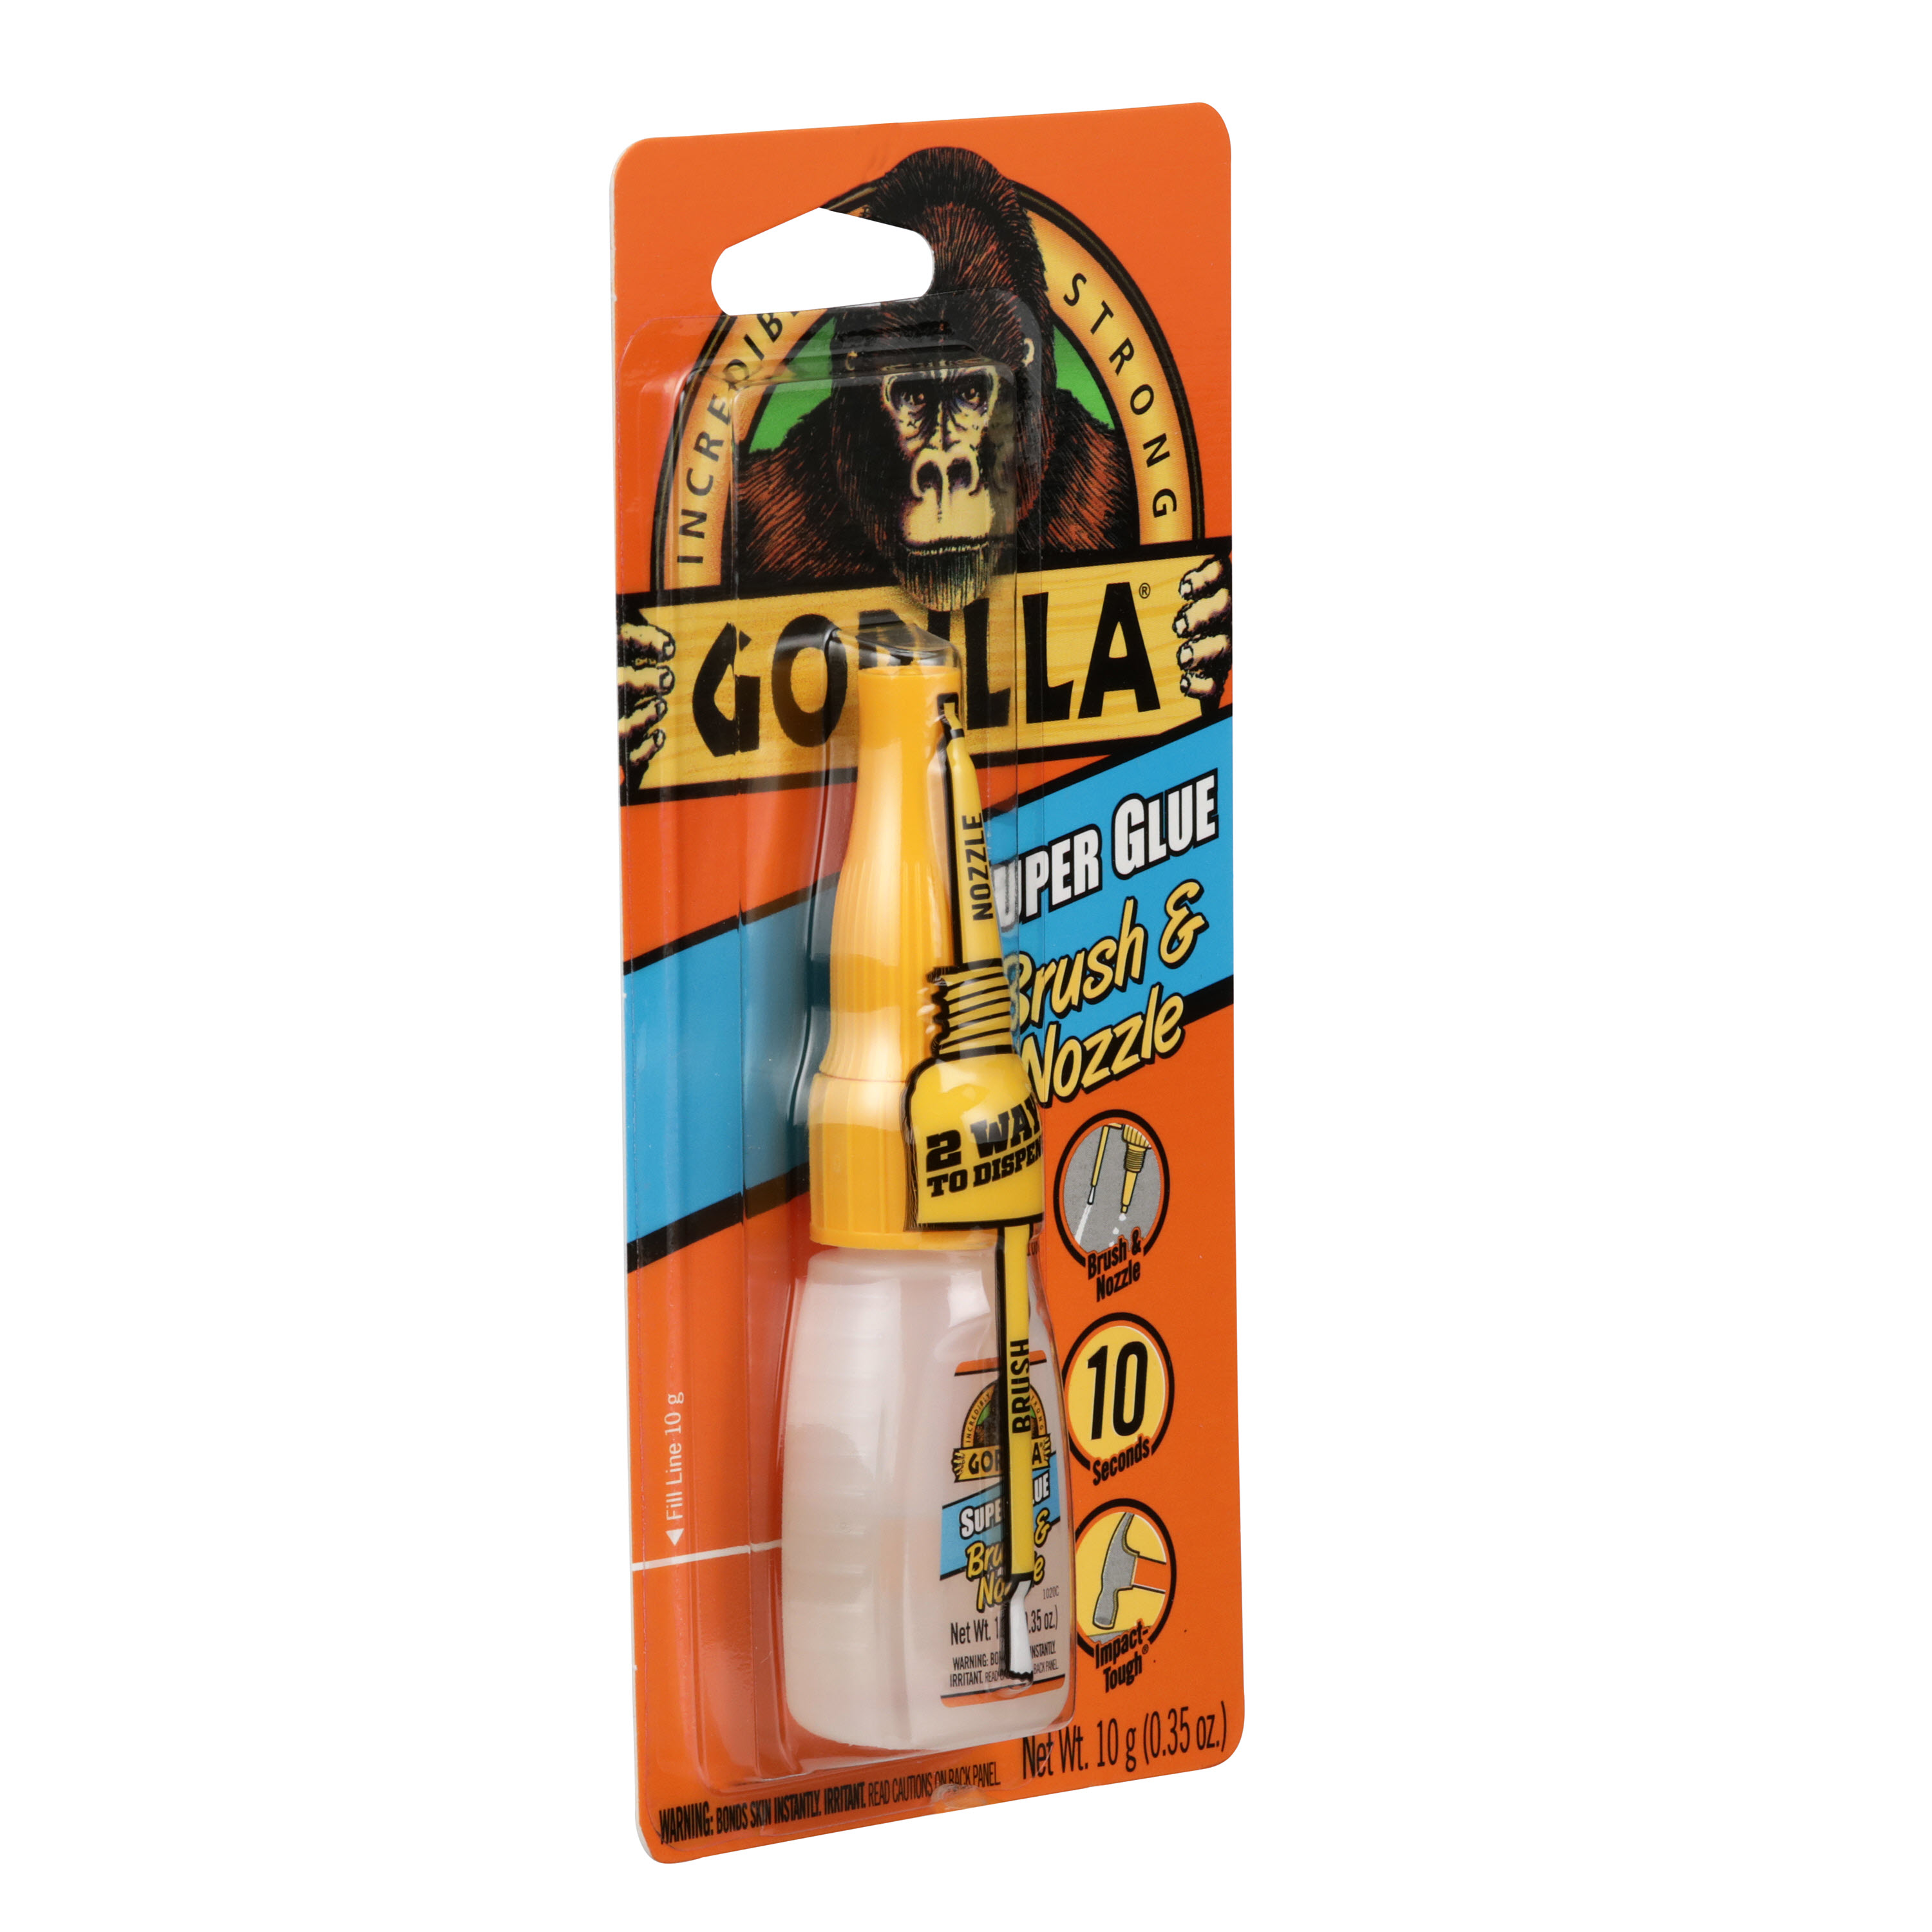 Gorilla Glue Super Glue Brush & Nozzle 10g 